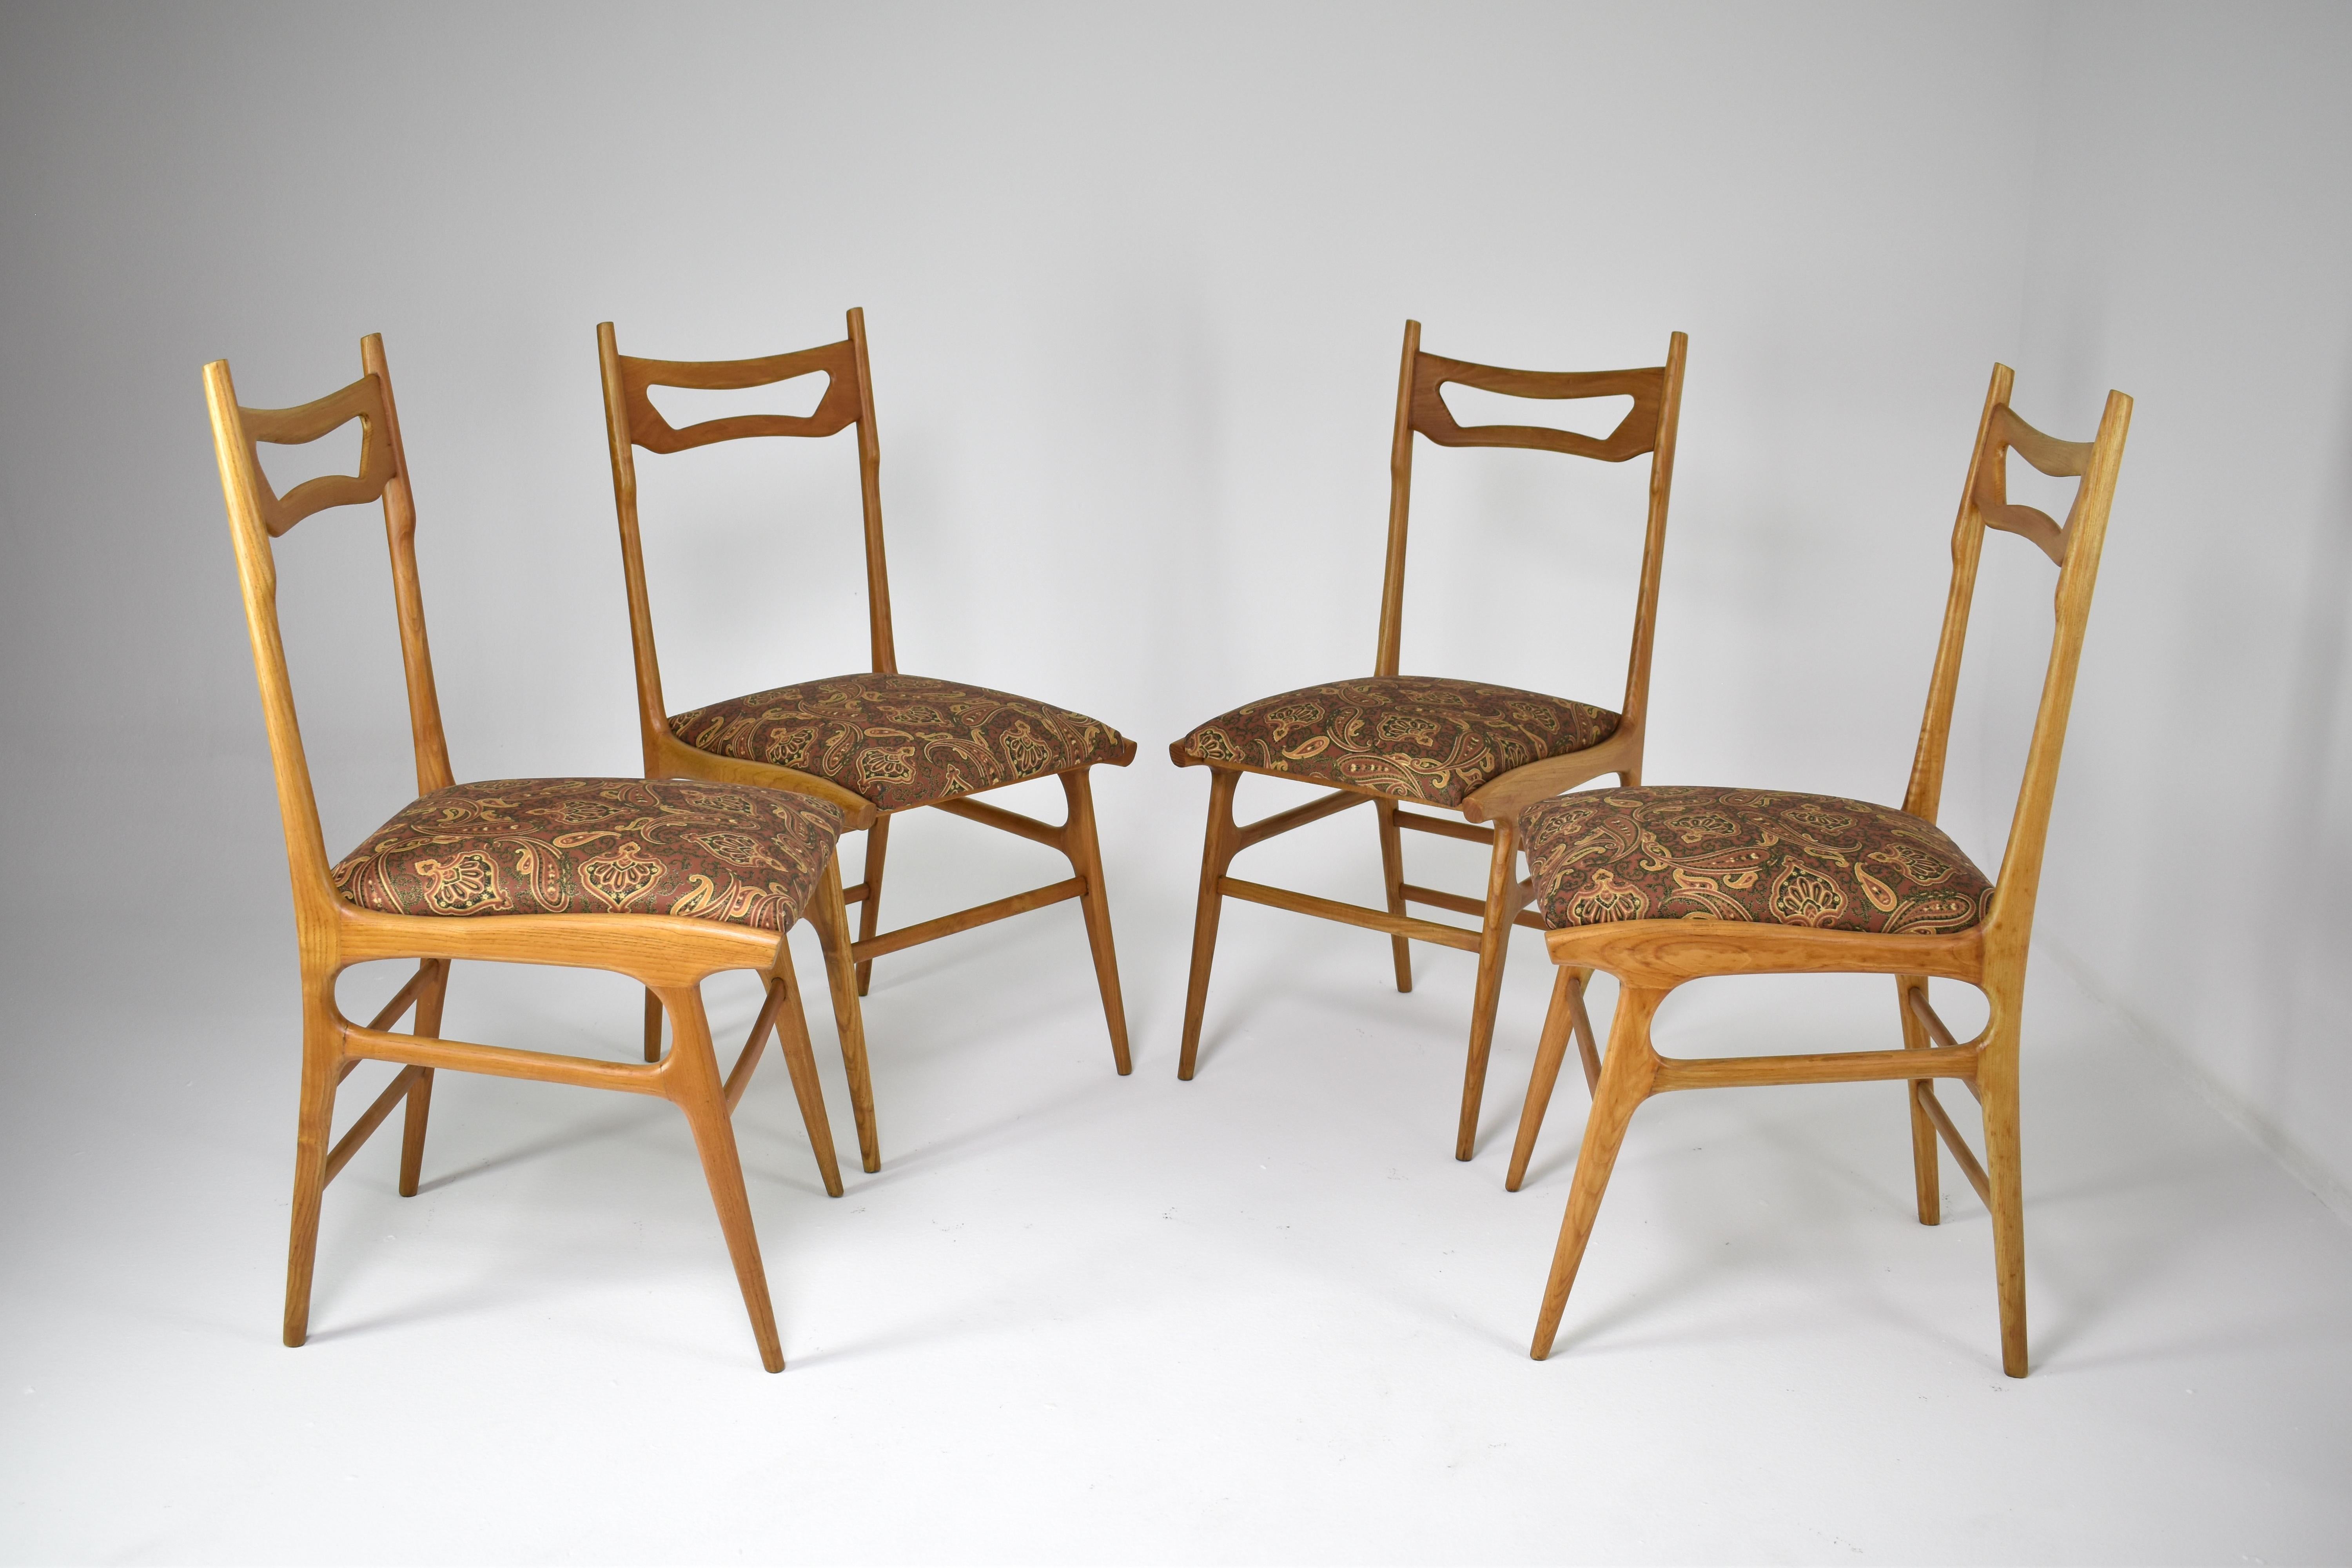 Ein Satz von vier bemerkenswerten italienischen Esszimmerstühlen aus den 1950er Jahren, jeder mit einer originalen Polsterung versehen, die ein fantastisches Vintage-Muster aufweist. Diese Stühle haben die Originalpolsterung auf der Sitzfläche und